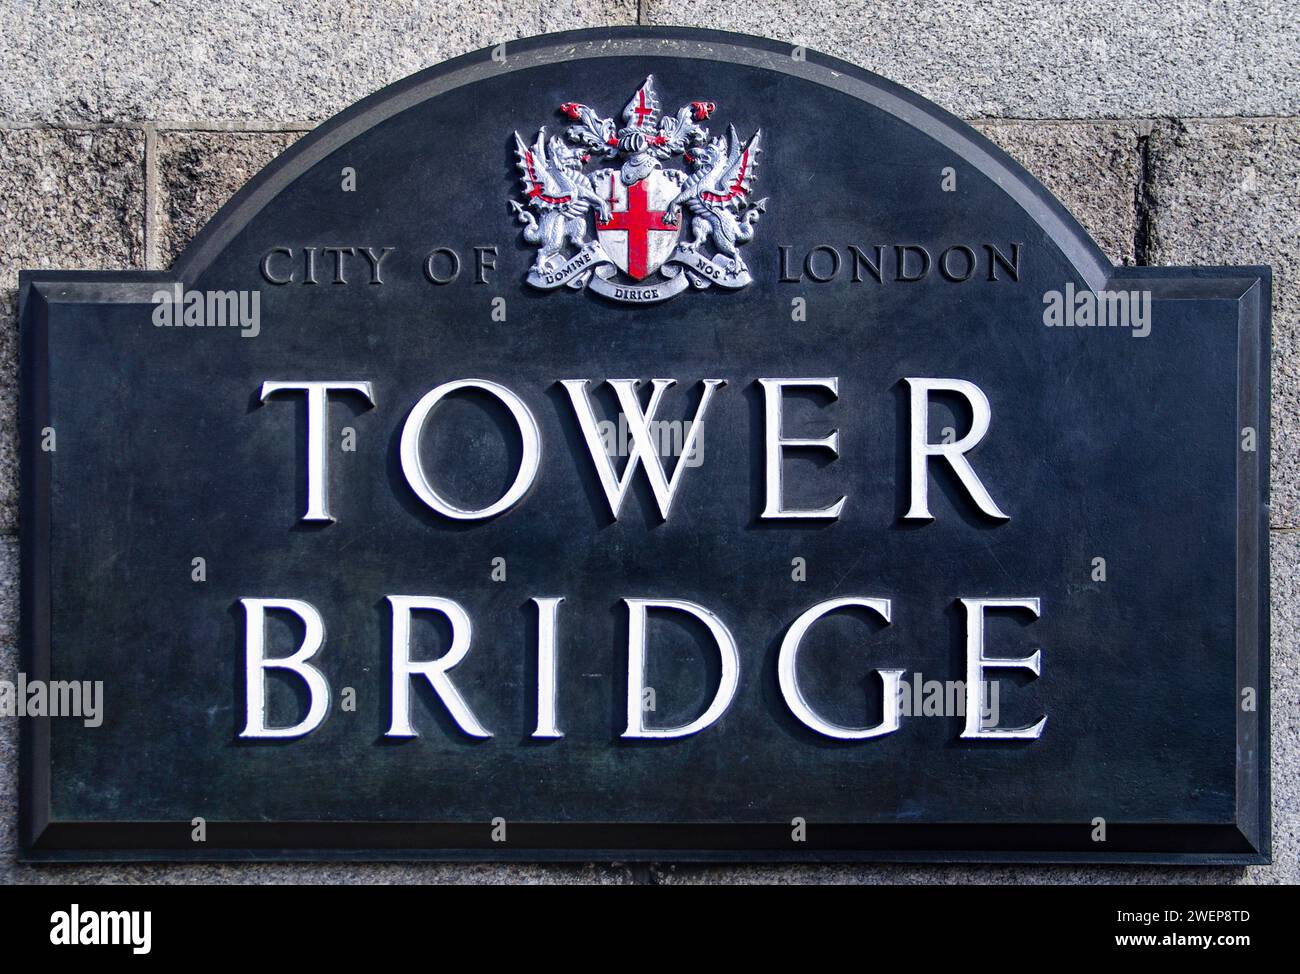 Londra: Berühmte Brücke - Die Tower Bridge. - Das Namensschild an einem der berühmtesten Bauwerke Londons. Die 1894 eröffnete Brücke überspannt die th Foto Stock